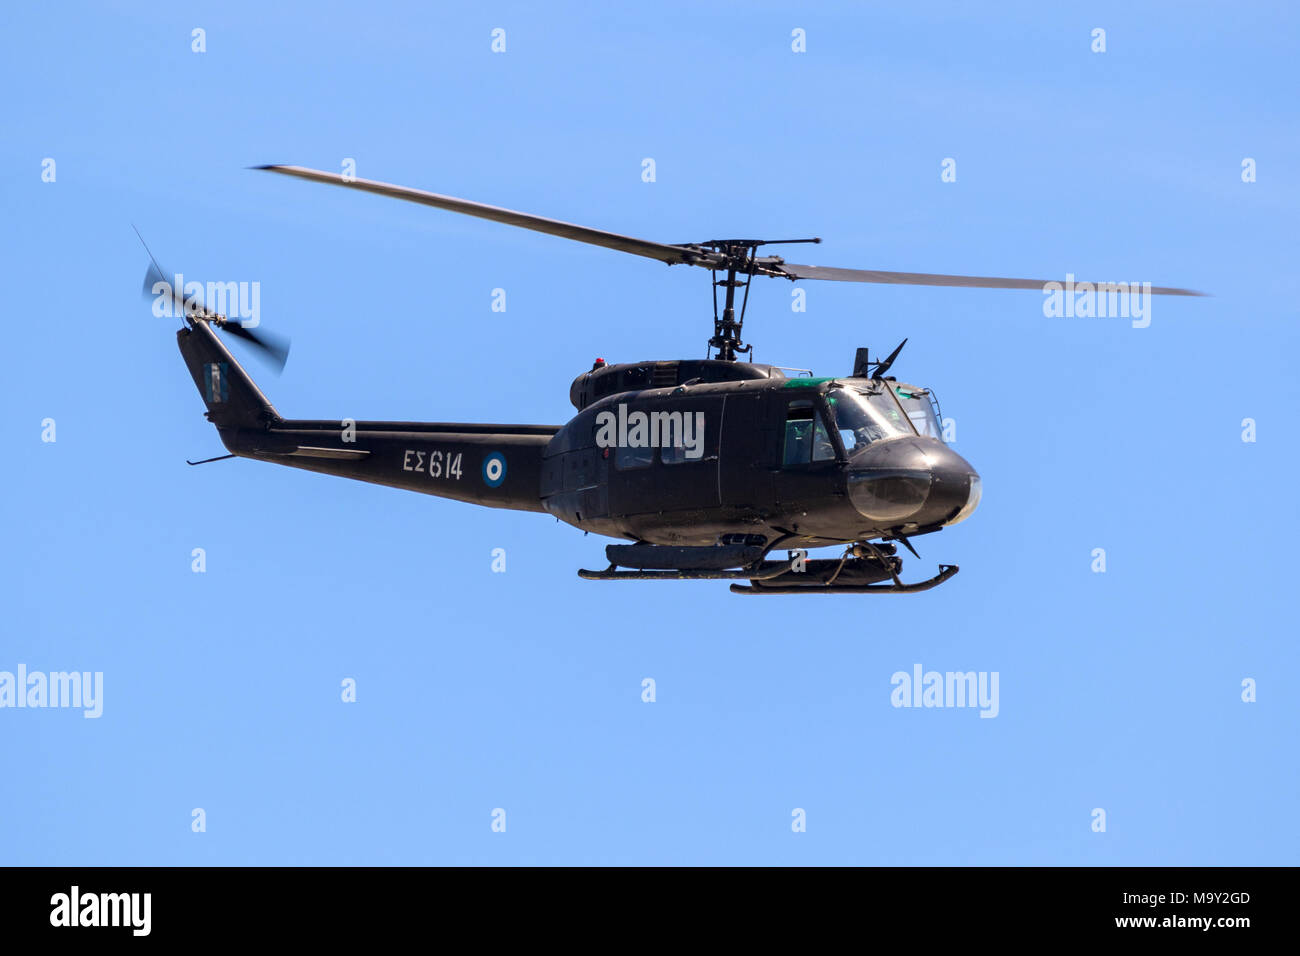 LARISSA, Grecia - 4 Maggio 2017: Esercito ellenica Bell UH-1H Huey elicotteri in volo Foto Stock